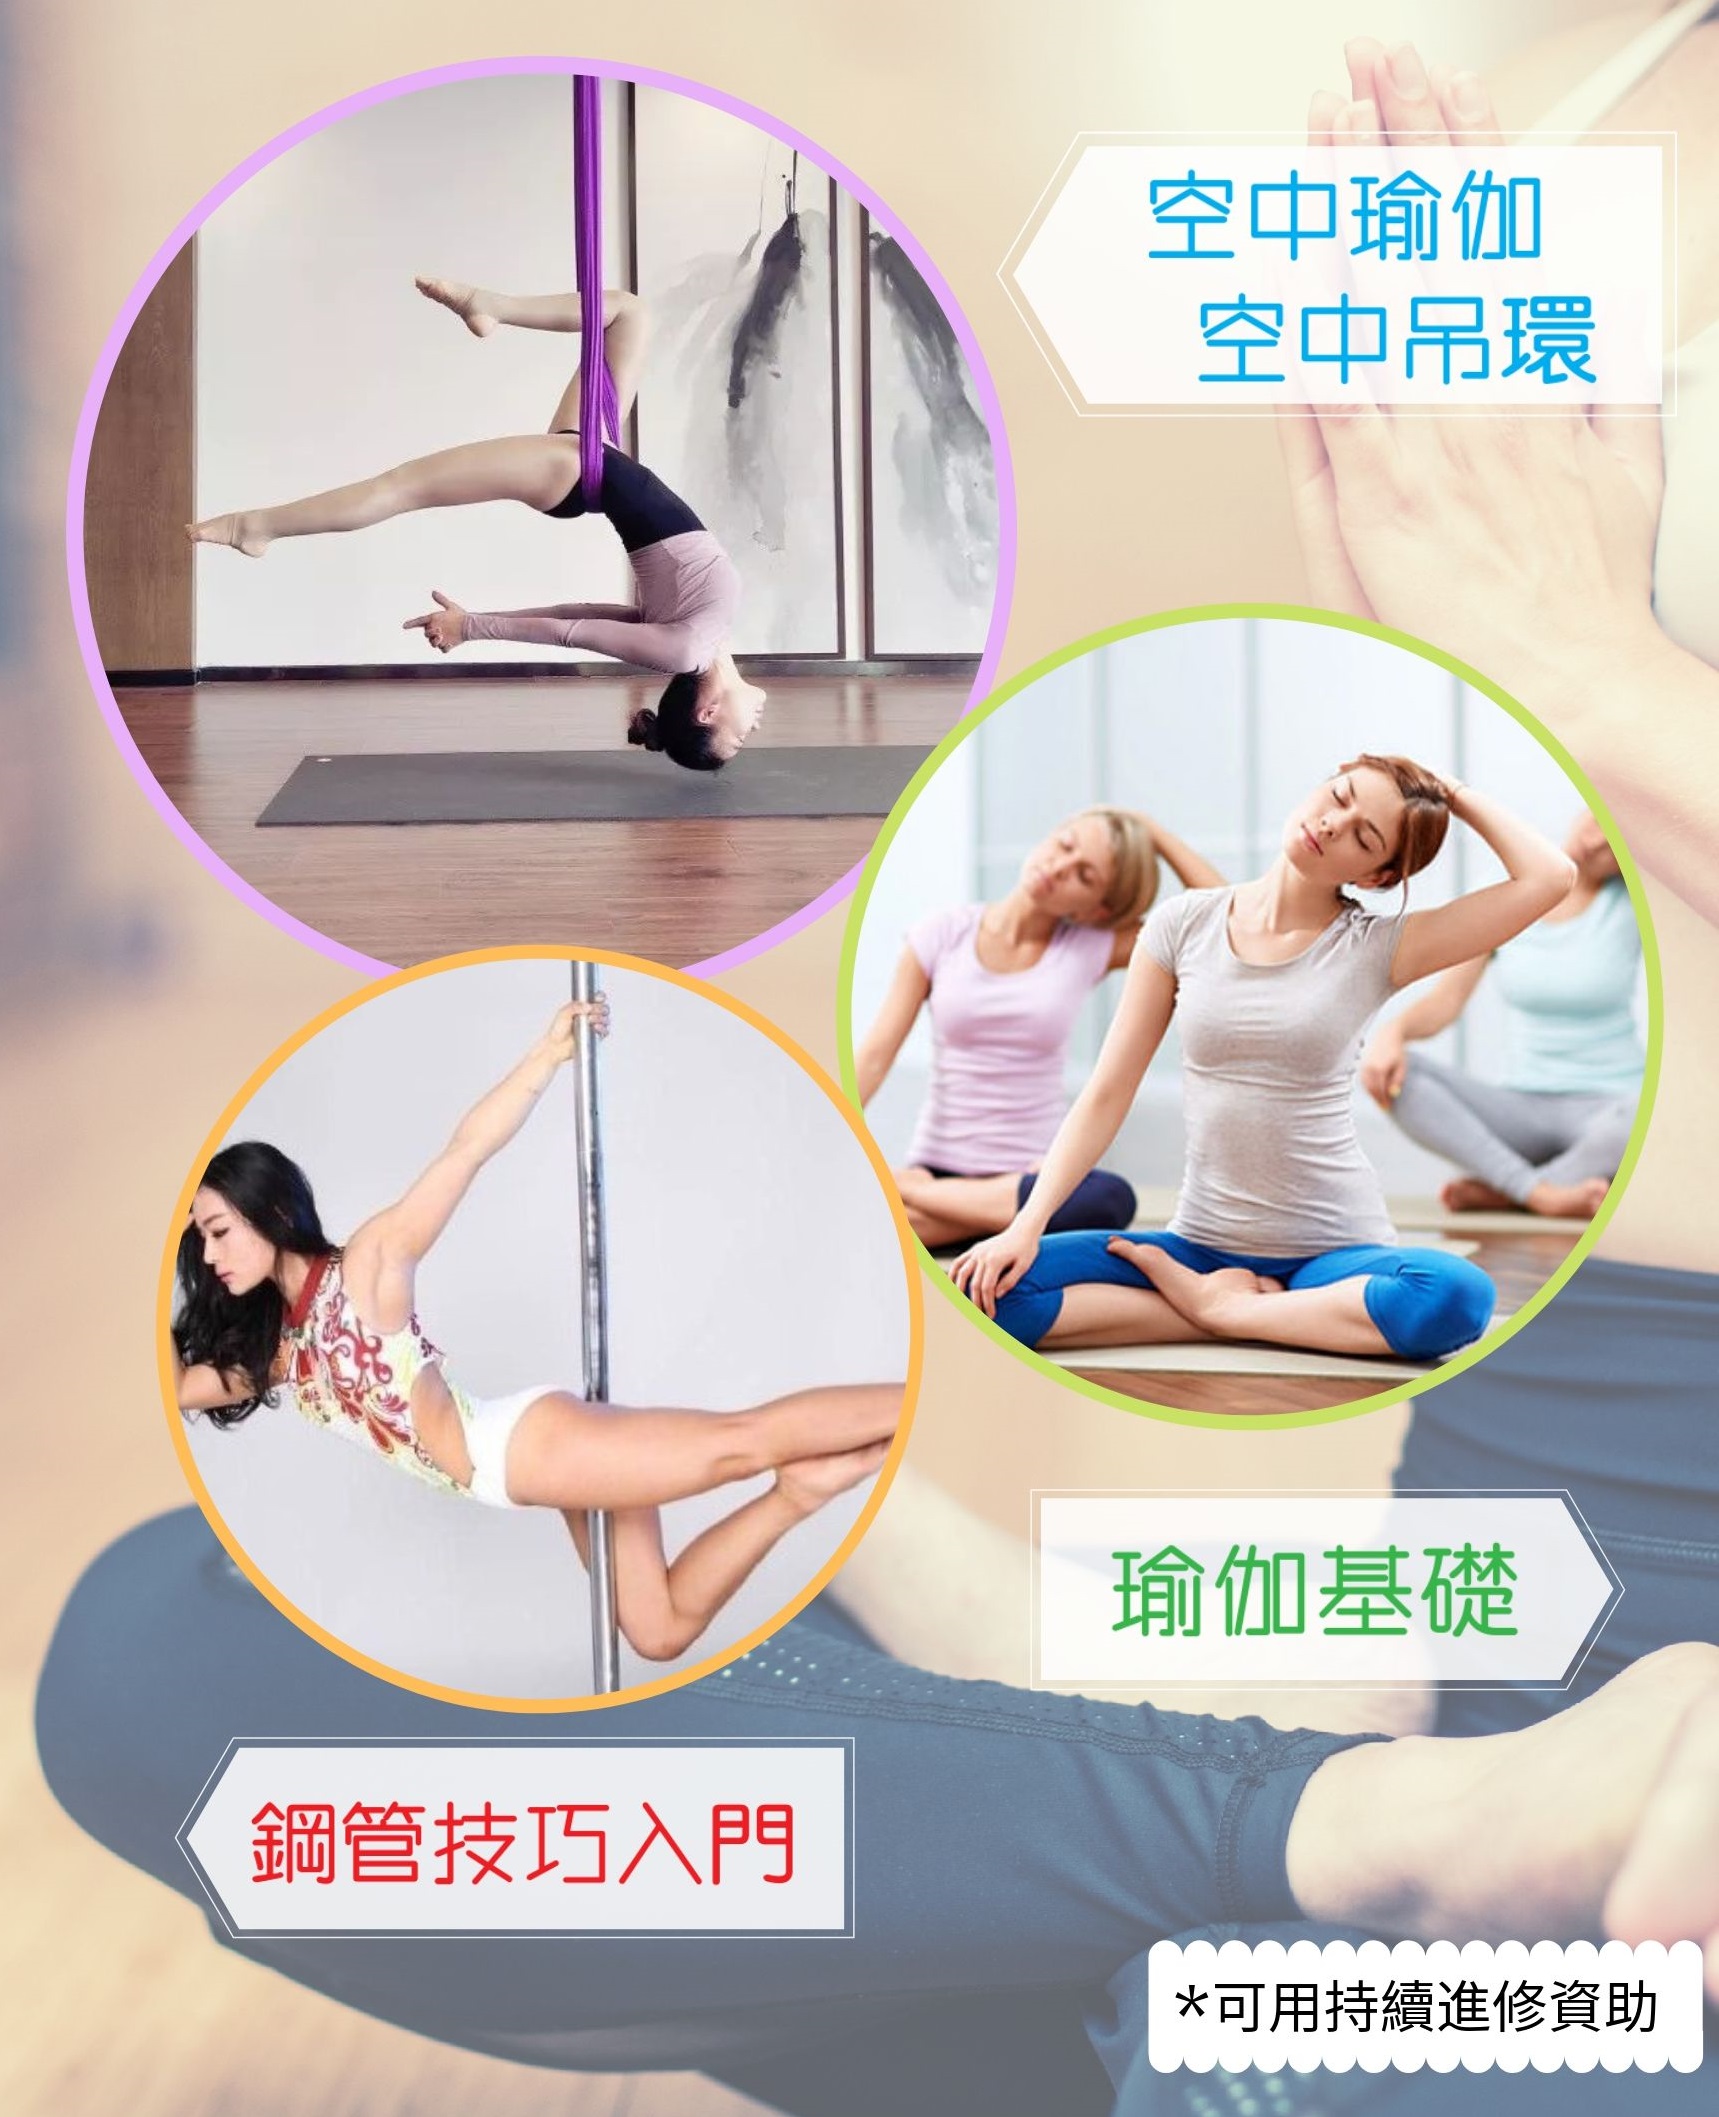 澳門教育進修平台 Macao Education Platform: 基礎瑜伽班